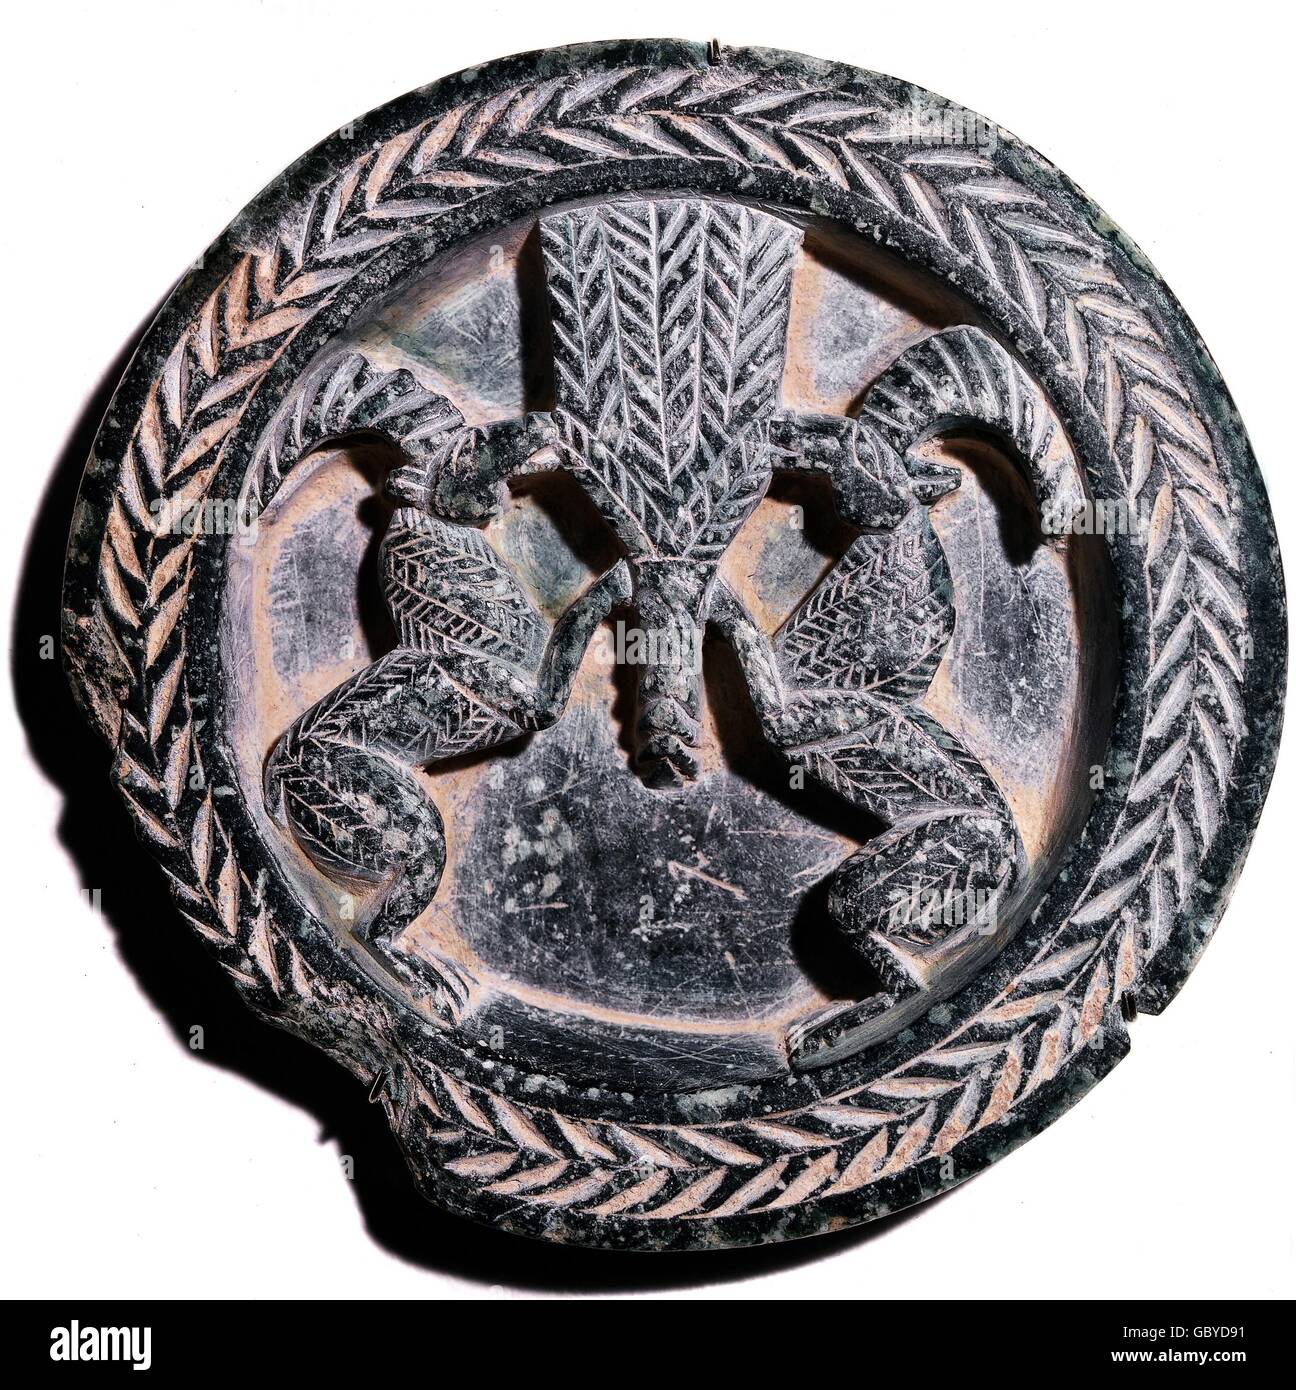 Belle arti, Iran, persiano, round rilievo decorativo con due stambecchi, 1° millennio BC, calcare grigio, 10.6 Centimetro, raccolta Mildenberg, Foto Stock